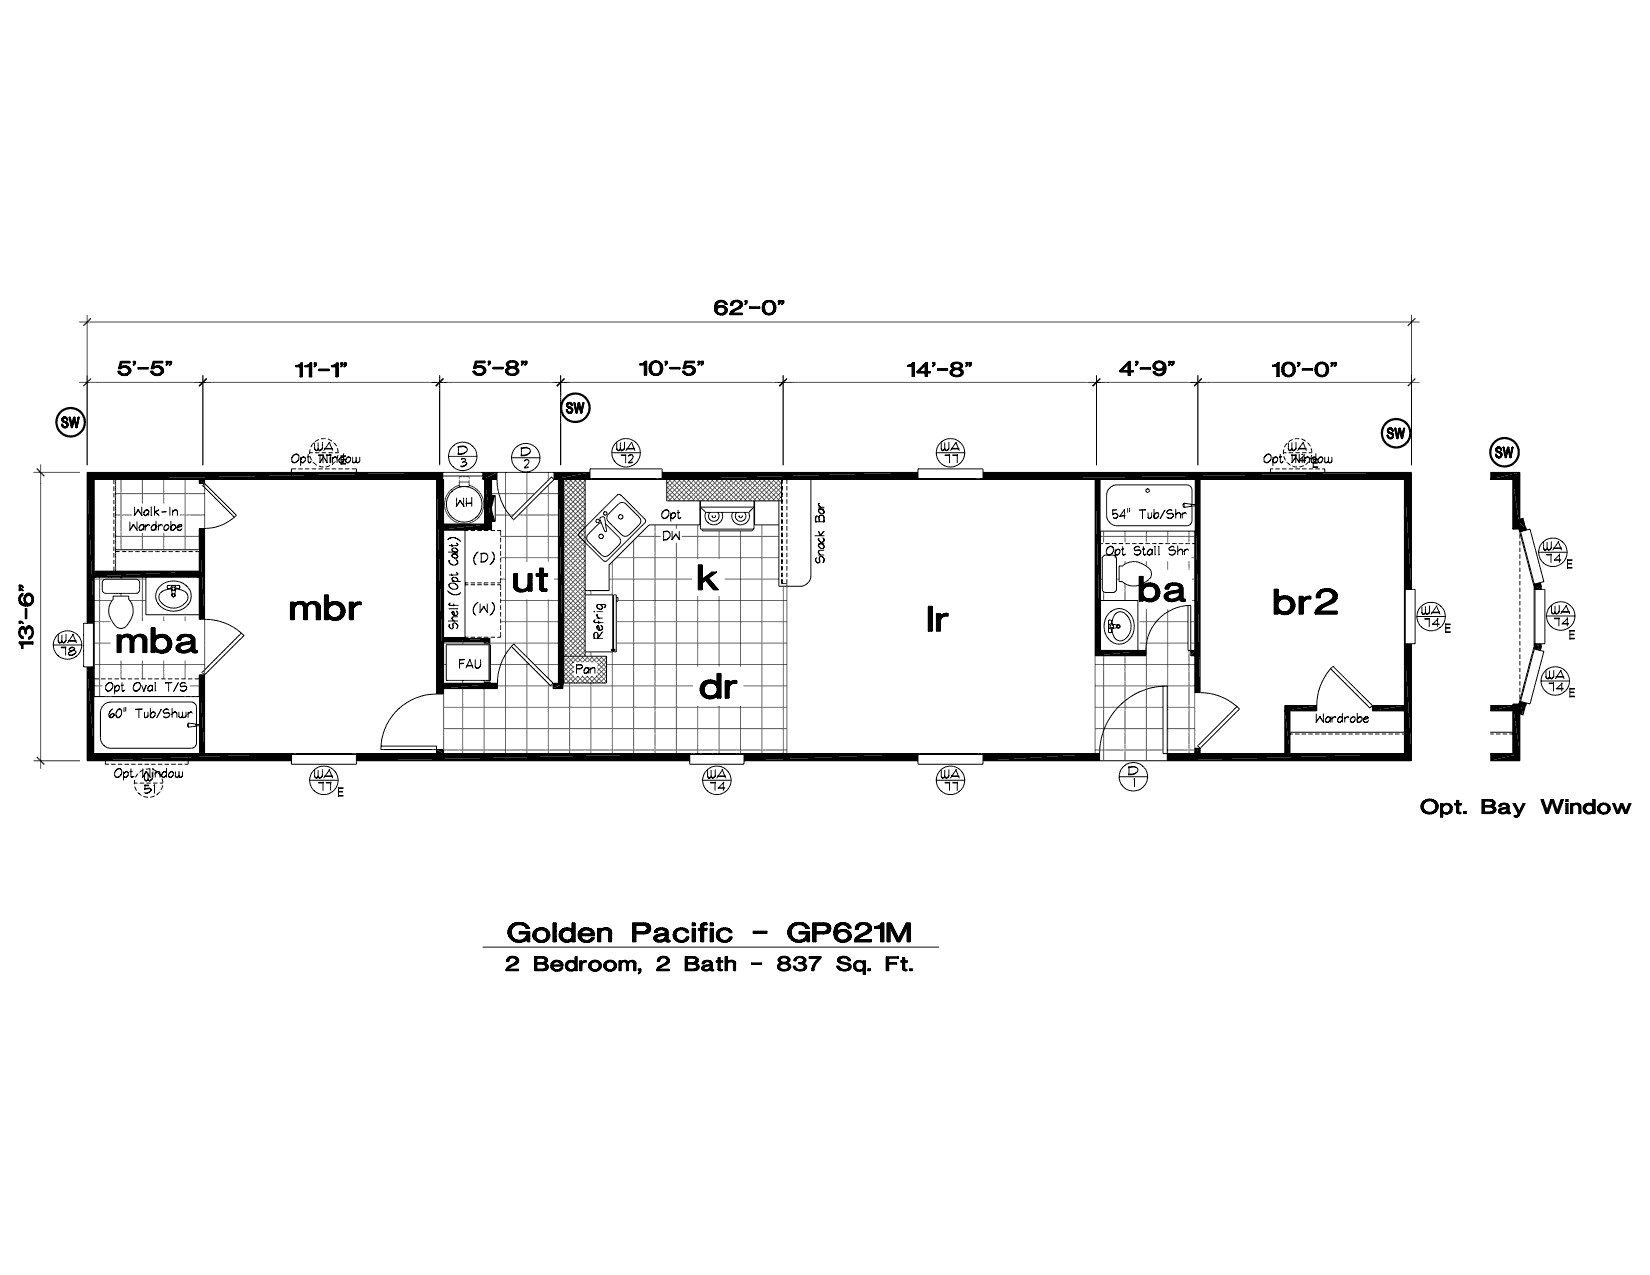 1997 fleetwood mobile home floor plan new modular home floor plans and manufactured home floor plans best